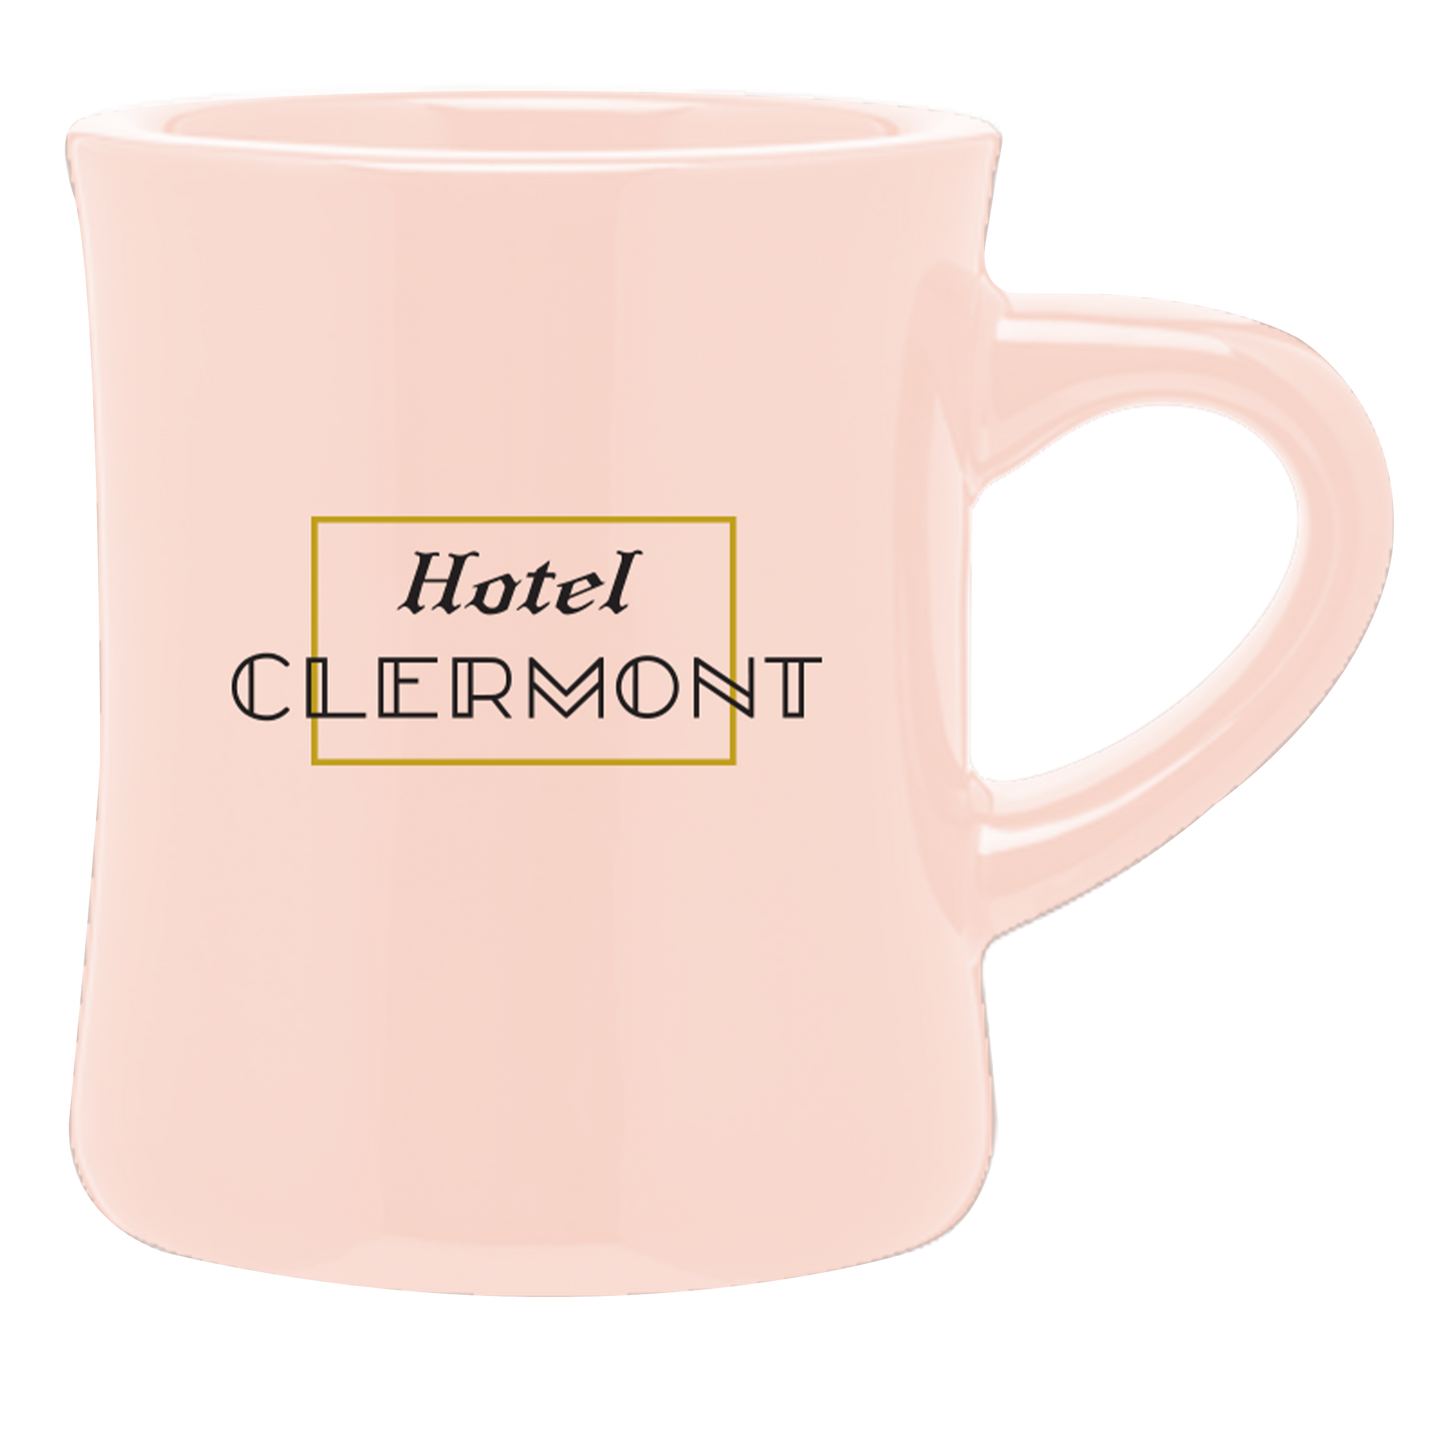 Hotel Clermont Mug